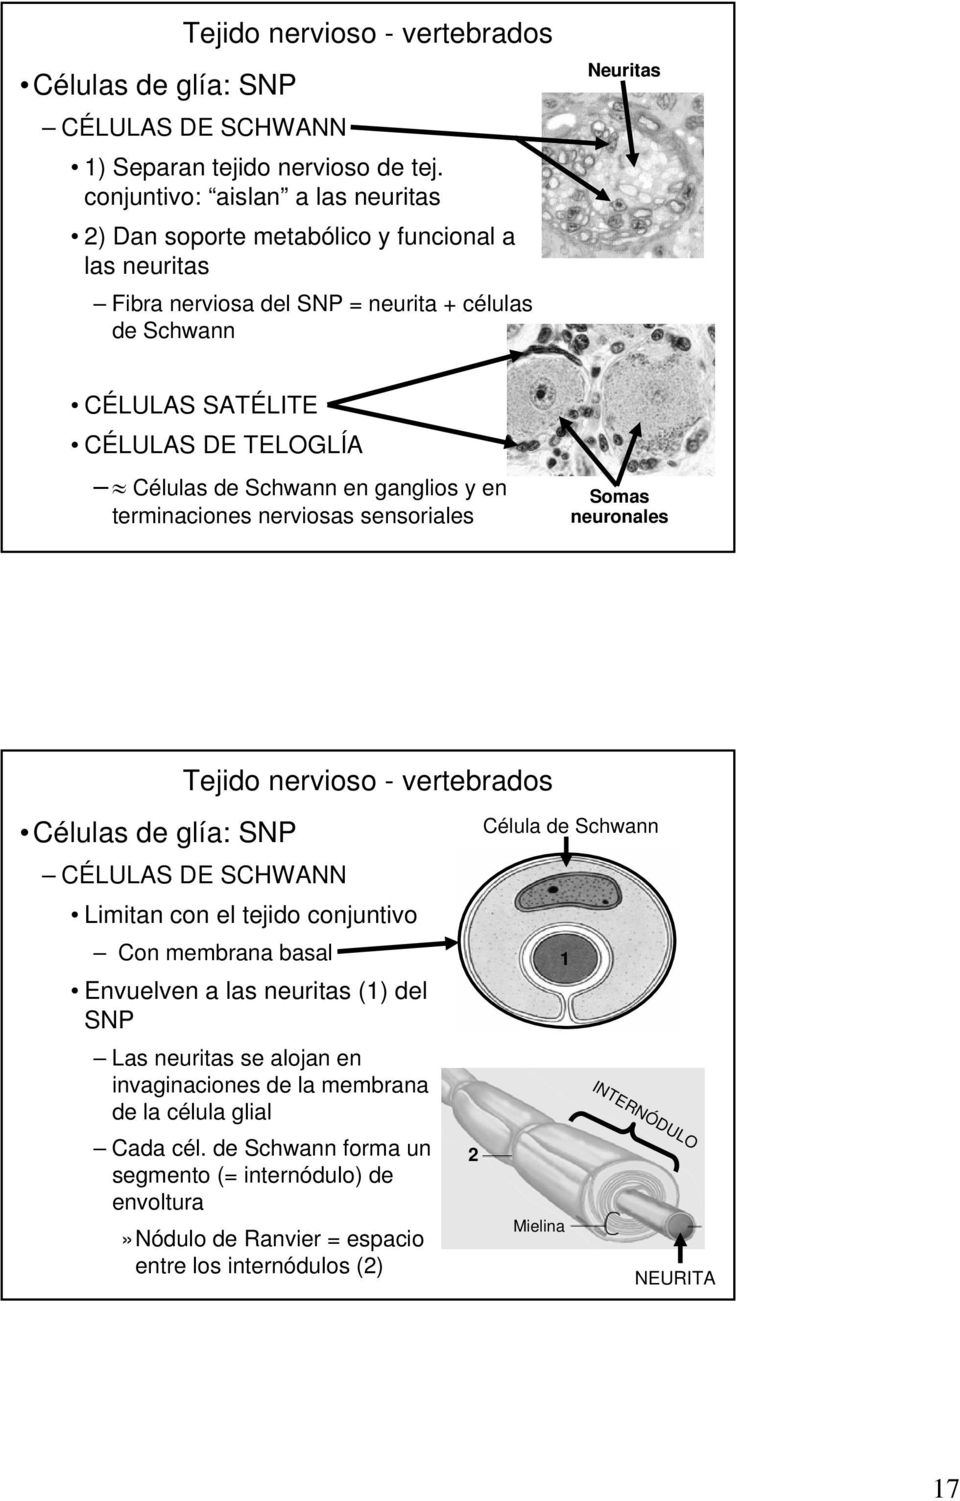 TELOGLÍA Células de Schwann en ganglios y en terminaciones nerviosas sensoriales Somas neuronales Células de glía: SNP CÉLULAS DE SCHWANN Limitan con el tejido conjuntivo Con